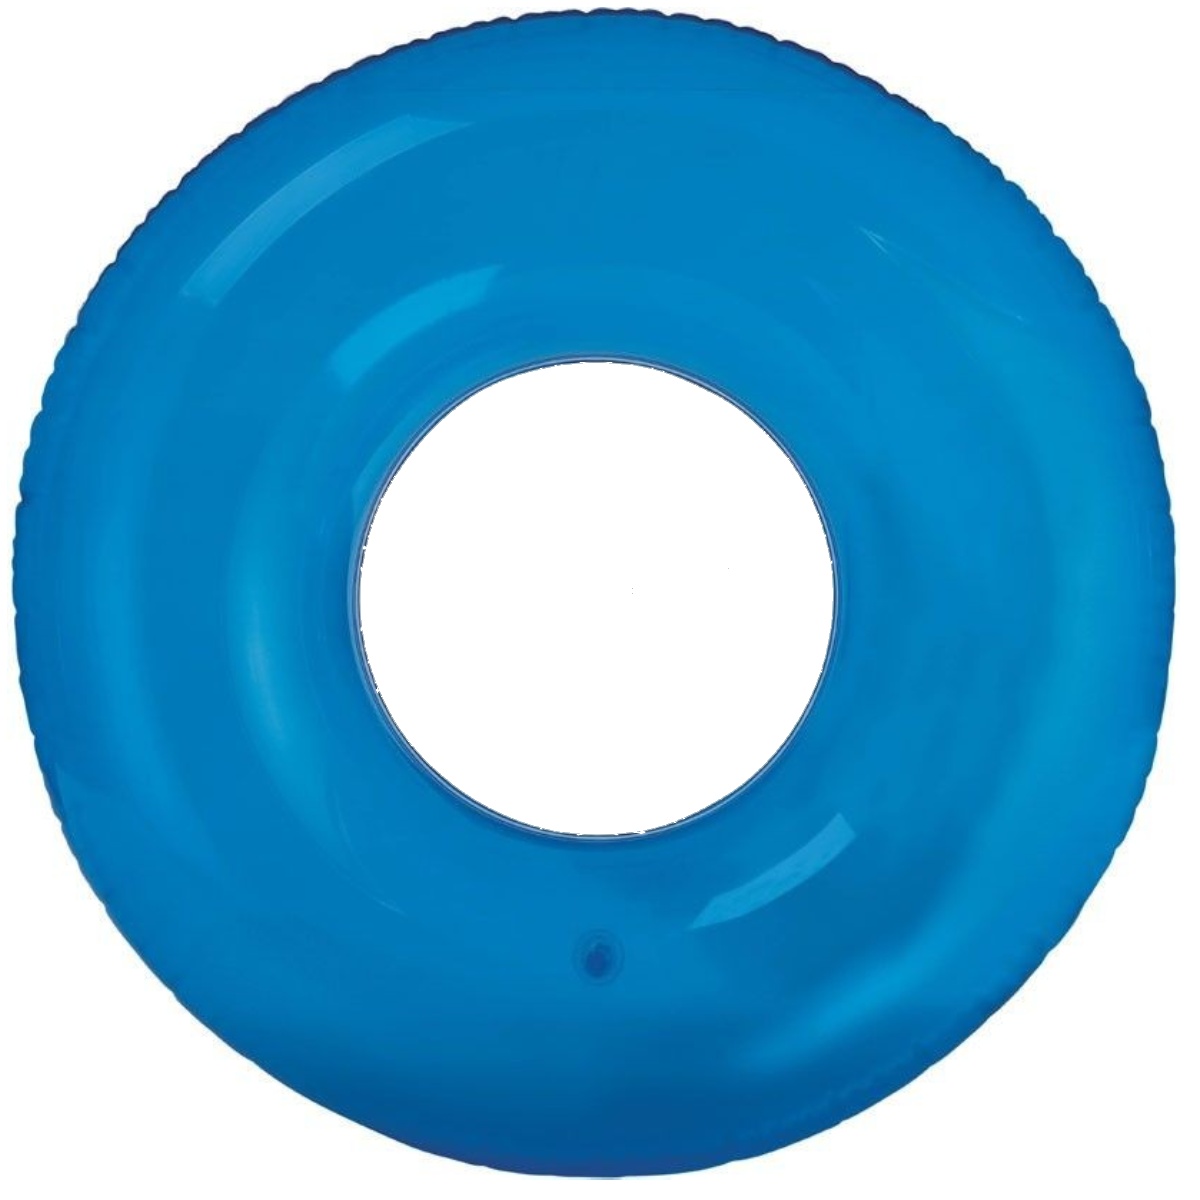 Nafukovací kruh INTEX barevný 76 cm - modrý